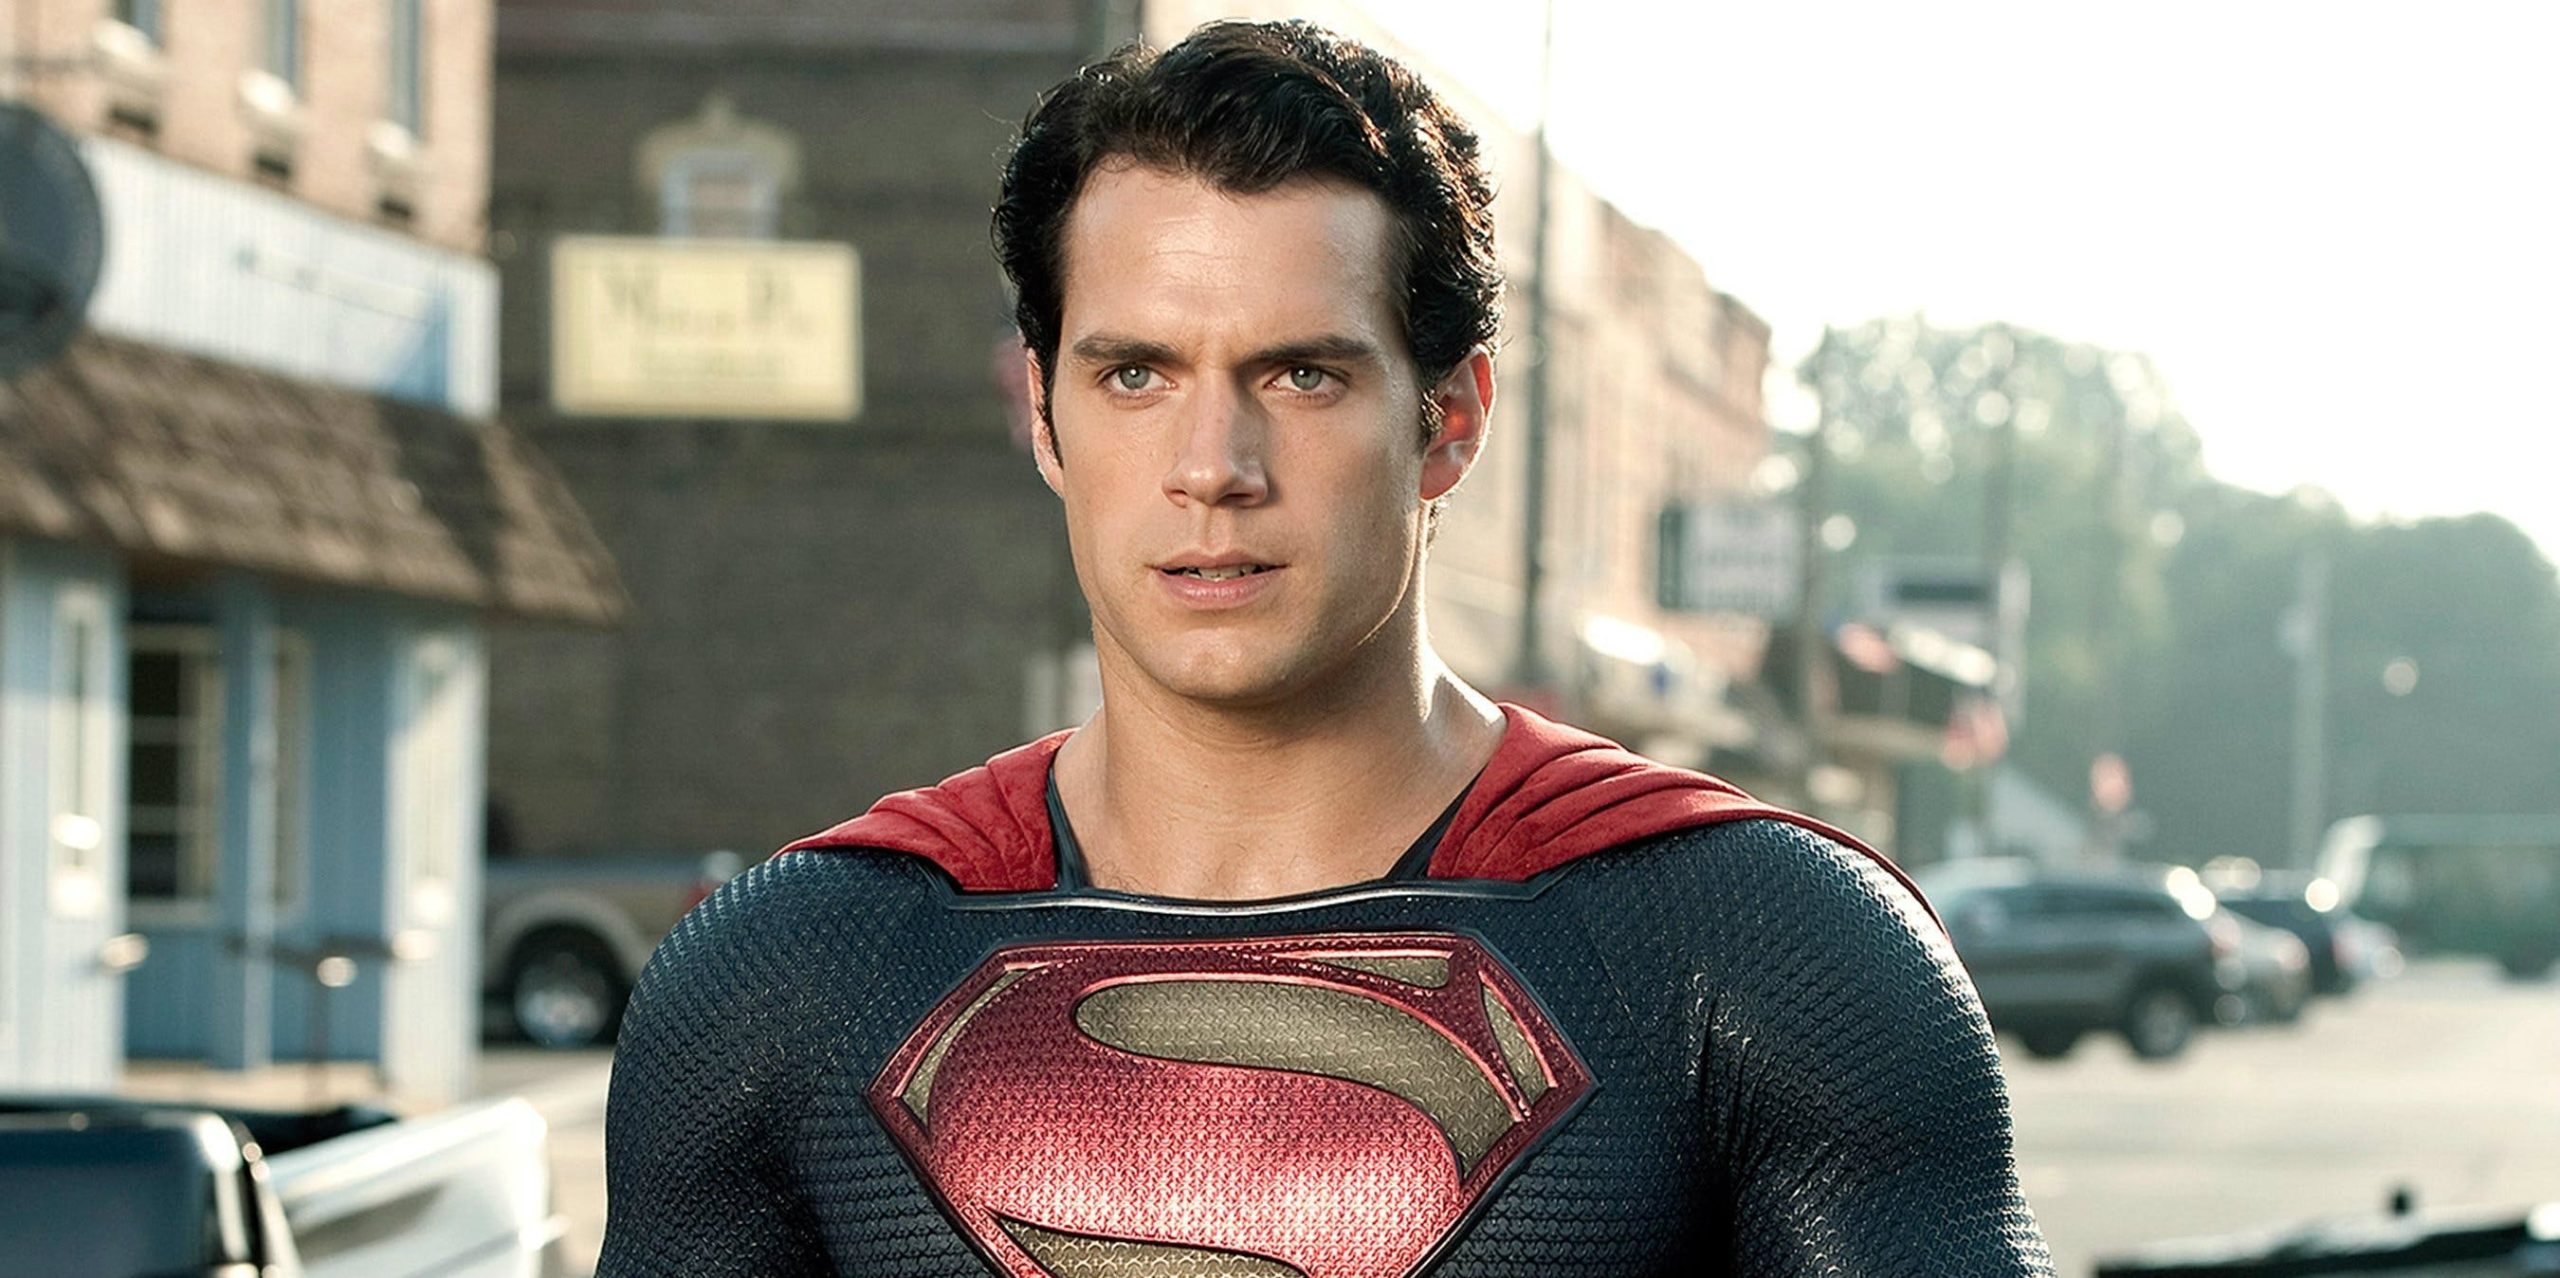 Se Henry Cavill for descartado, veja quem pode ser o novo Superman